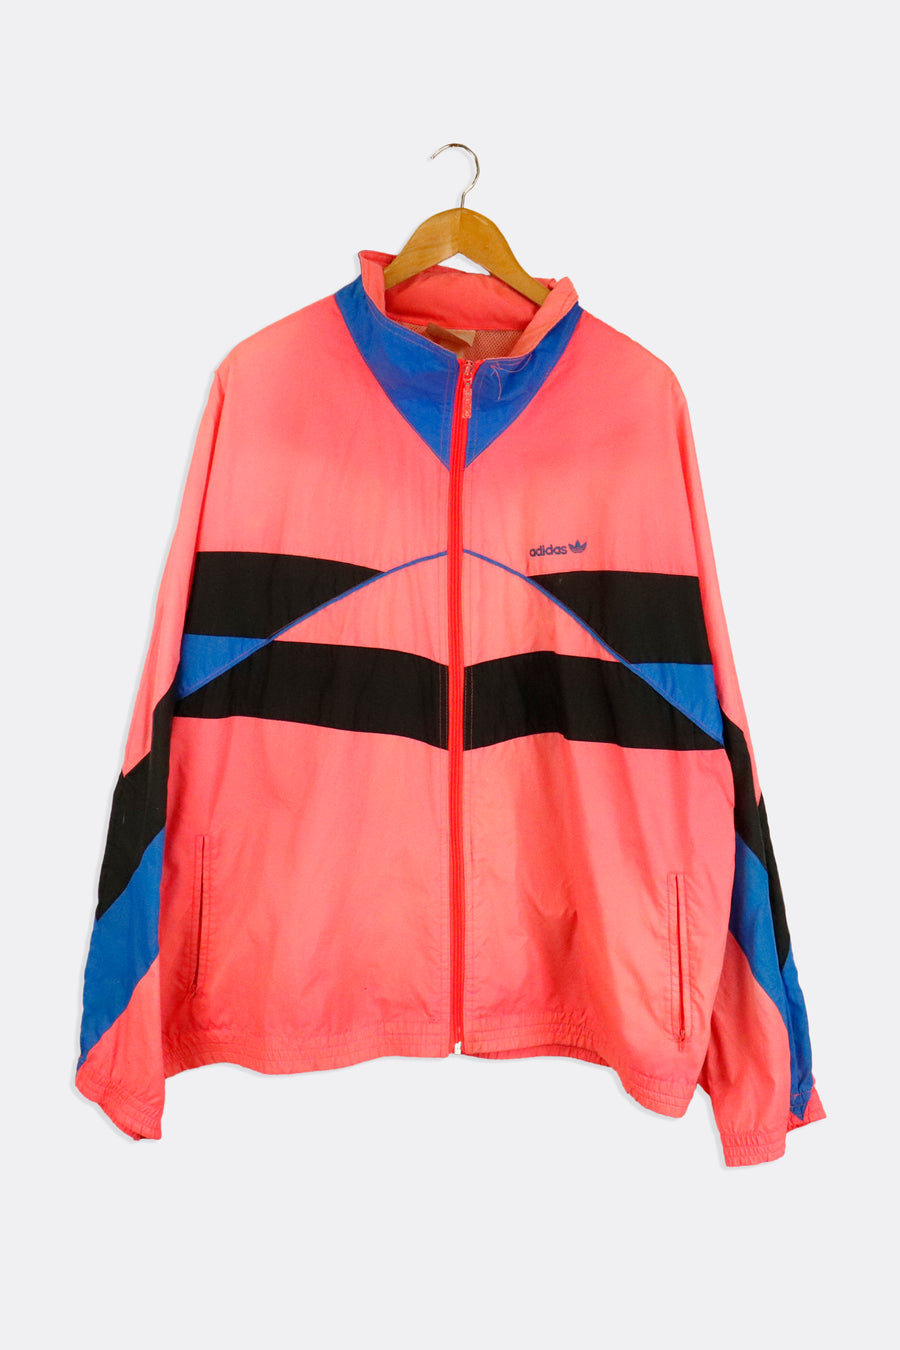 Vintage Adidas Full Zip Neon Windbreaker Jacket Outerwear Sz XL